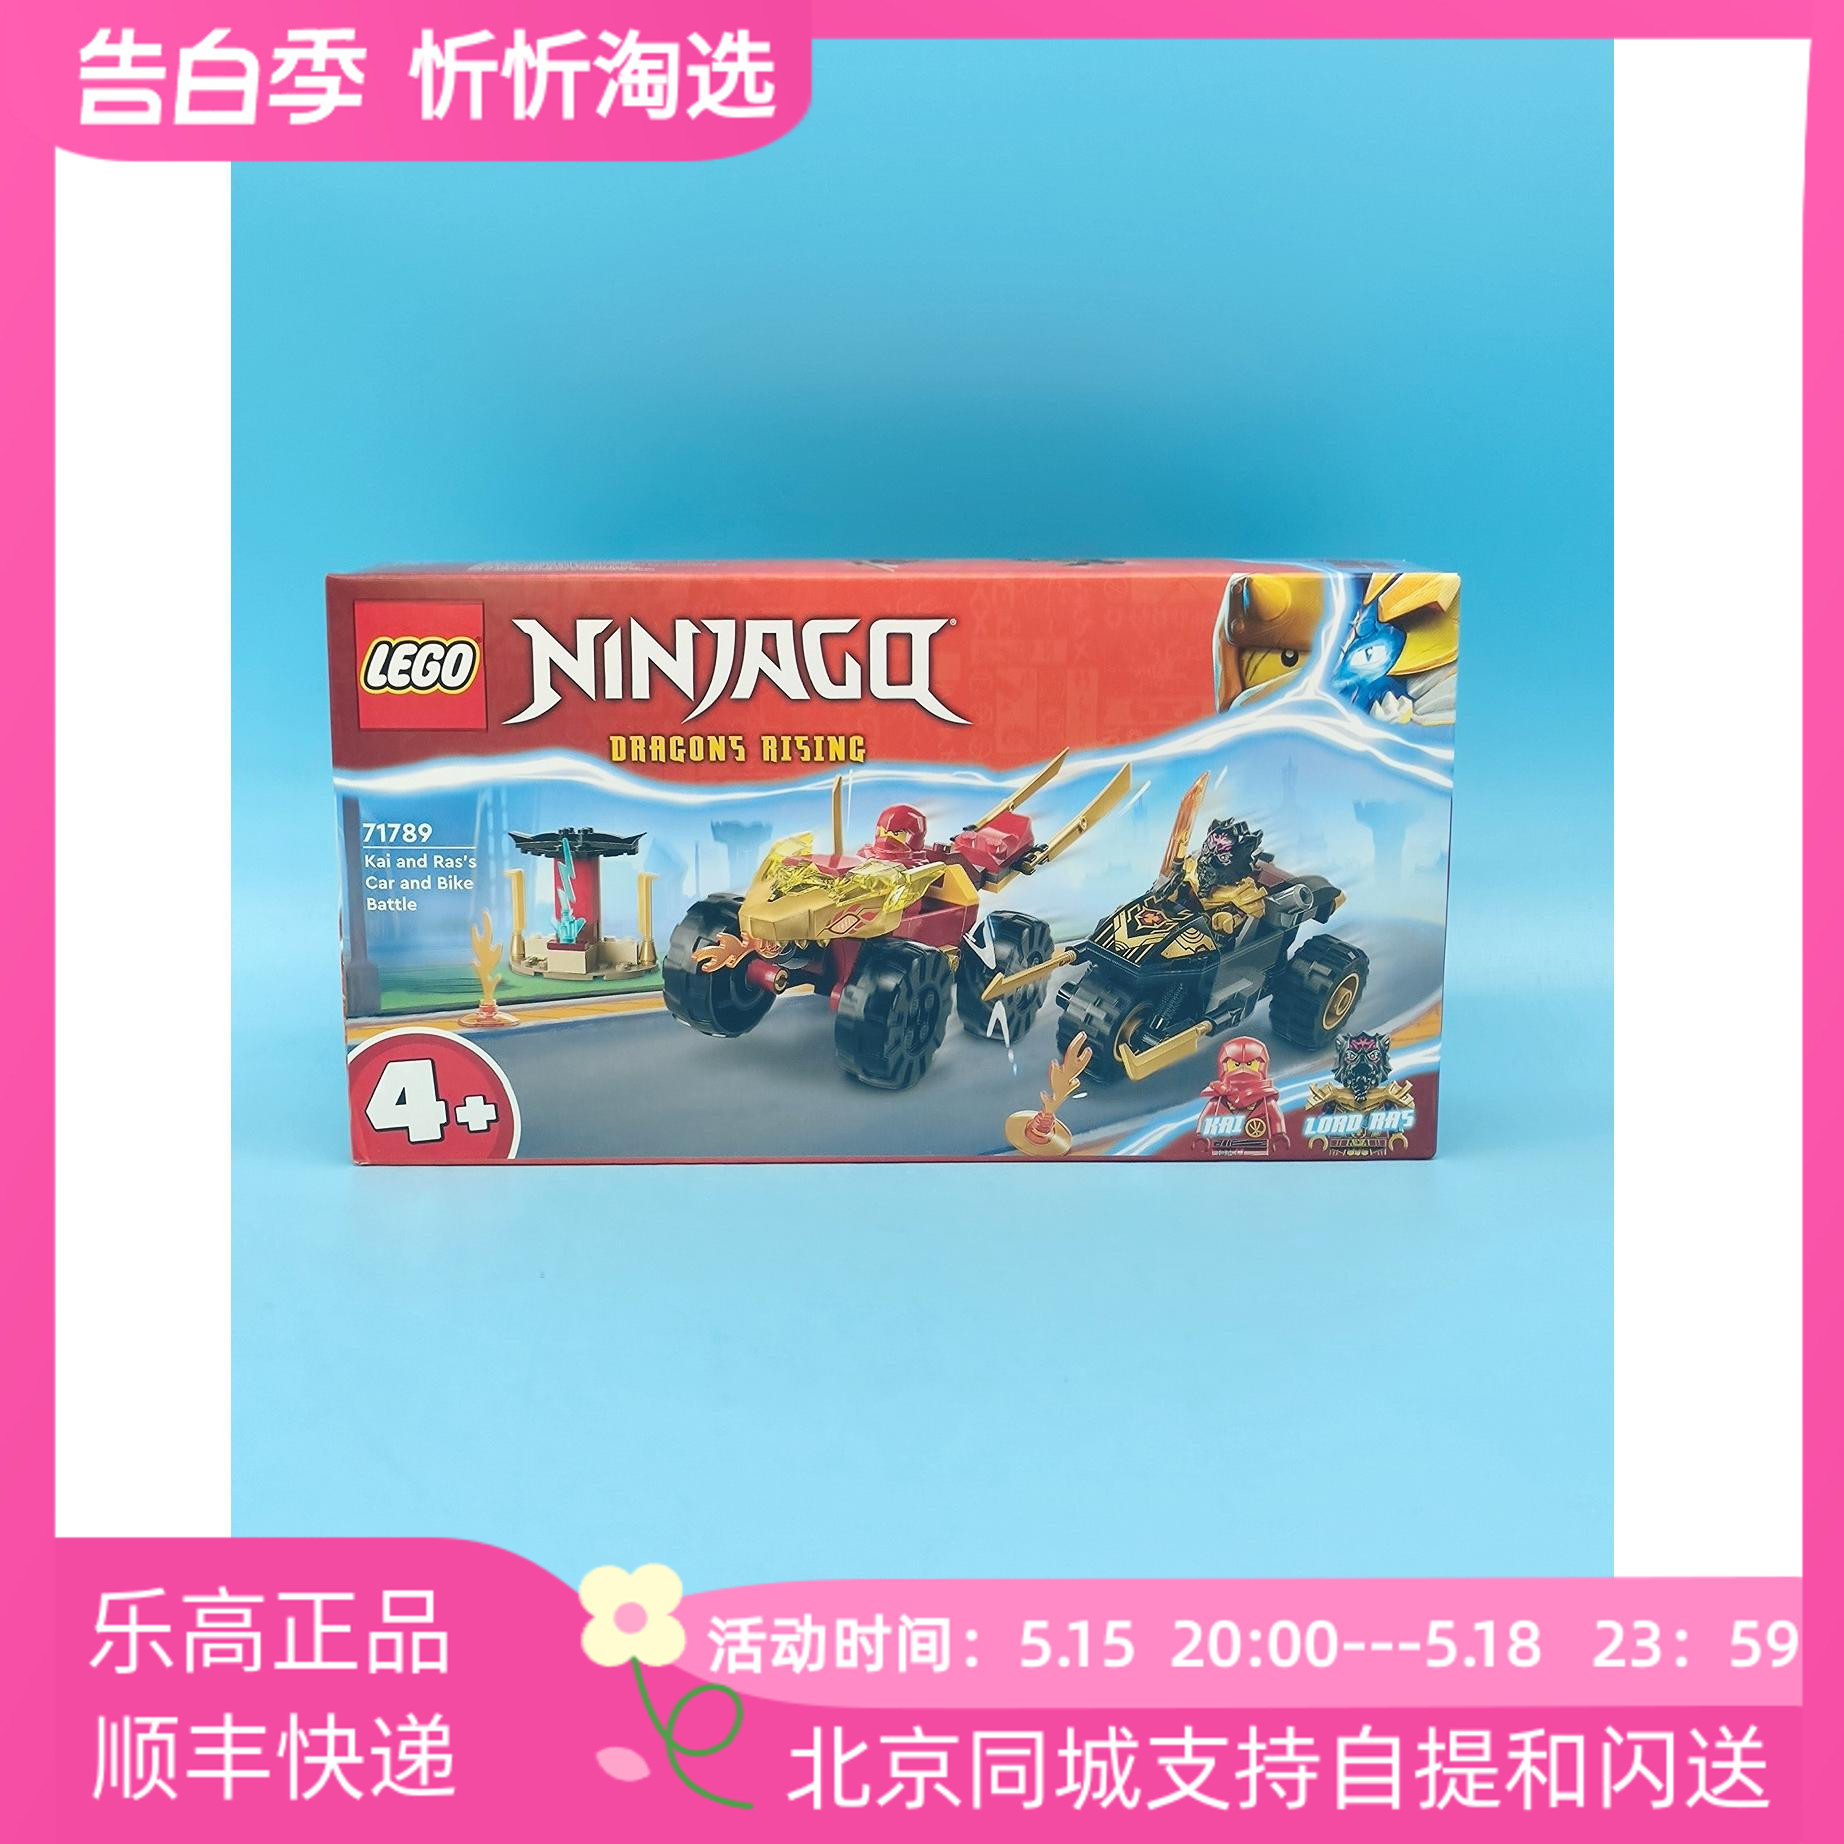 LEGO乐高幻影忍者71789凯与拉斯的汽车和摩托车大战益智积木玩具